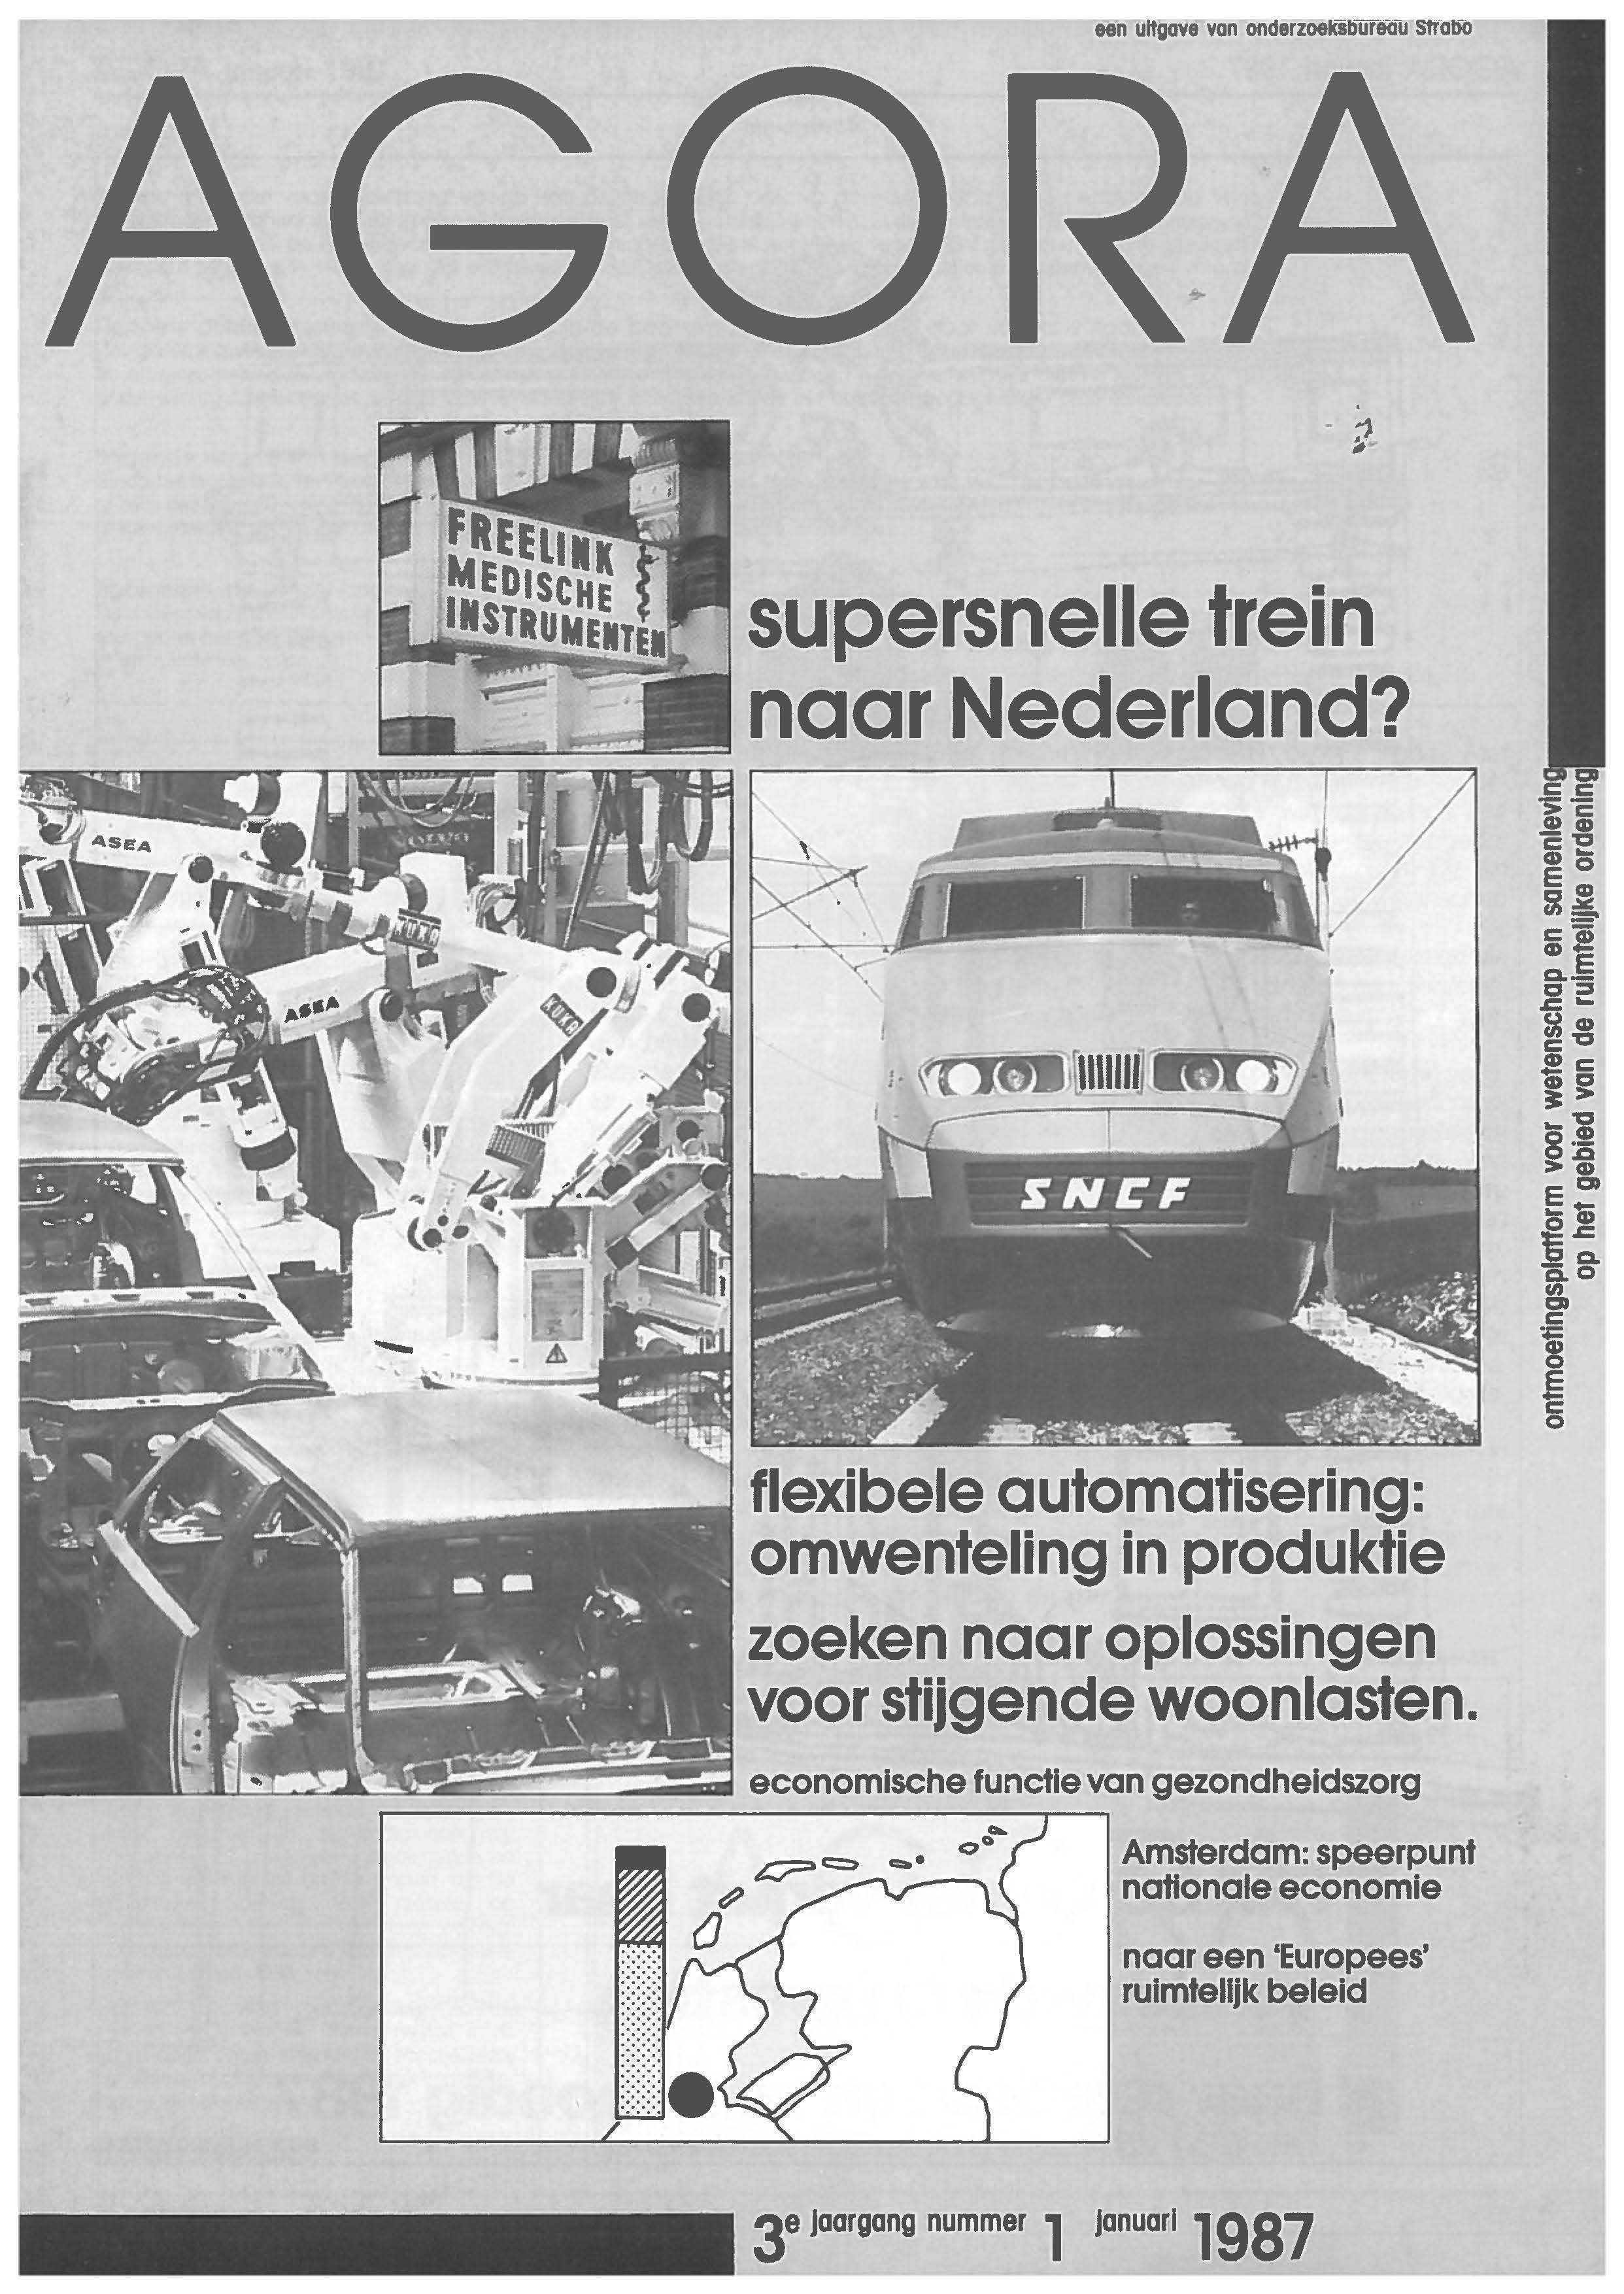 Supersnelle trein voor Nederland vooral van psychologisch belang: Ruimtelijk-economische gevolgen van aanleg hoge-snelheidsnet